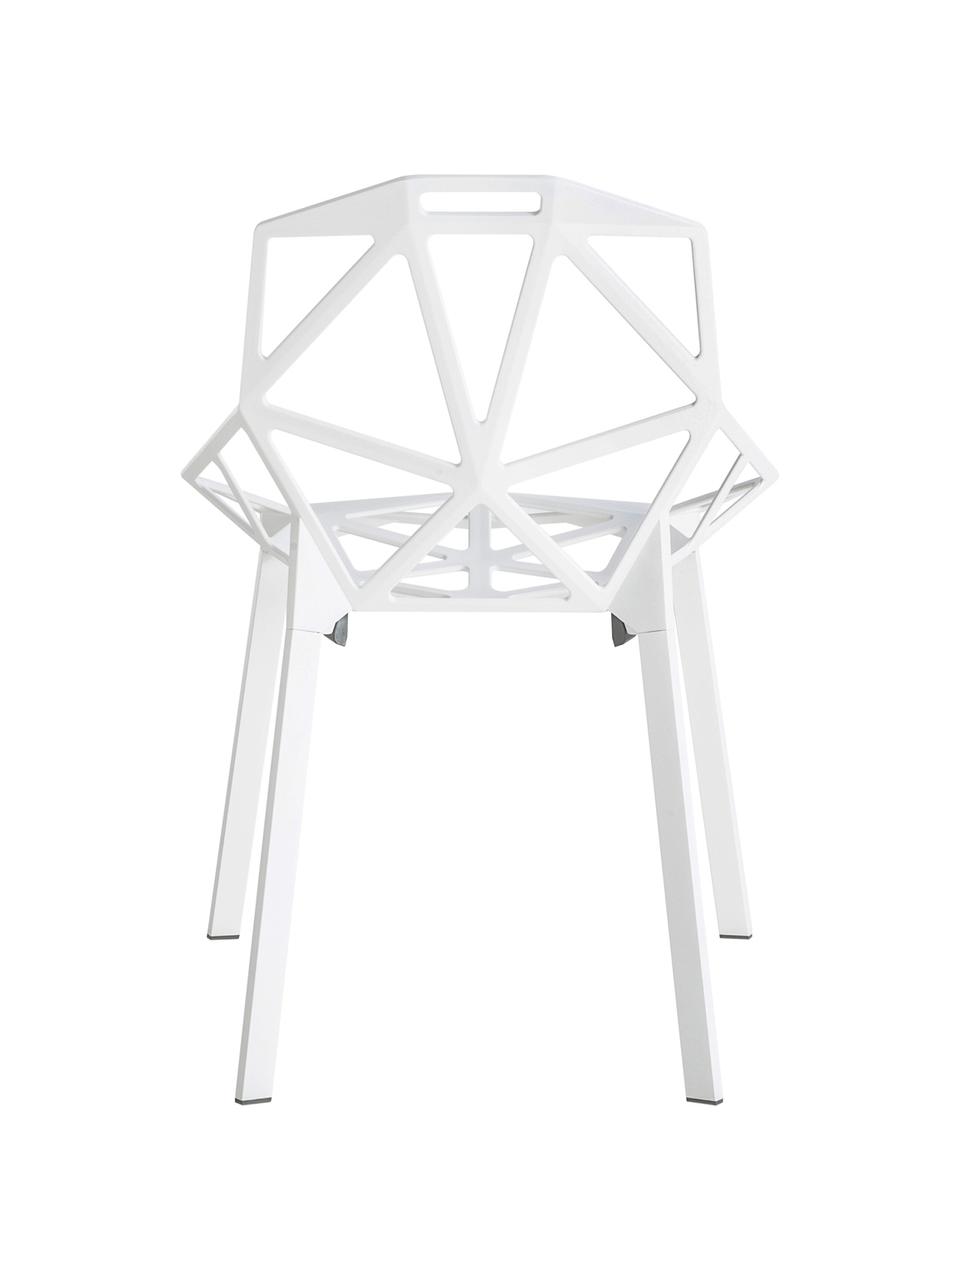 Design-Metallstuhl Chair One, Aluminium, druckgegossen, polyester-lackiert, Weiss, B 55 x T 59 cm